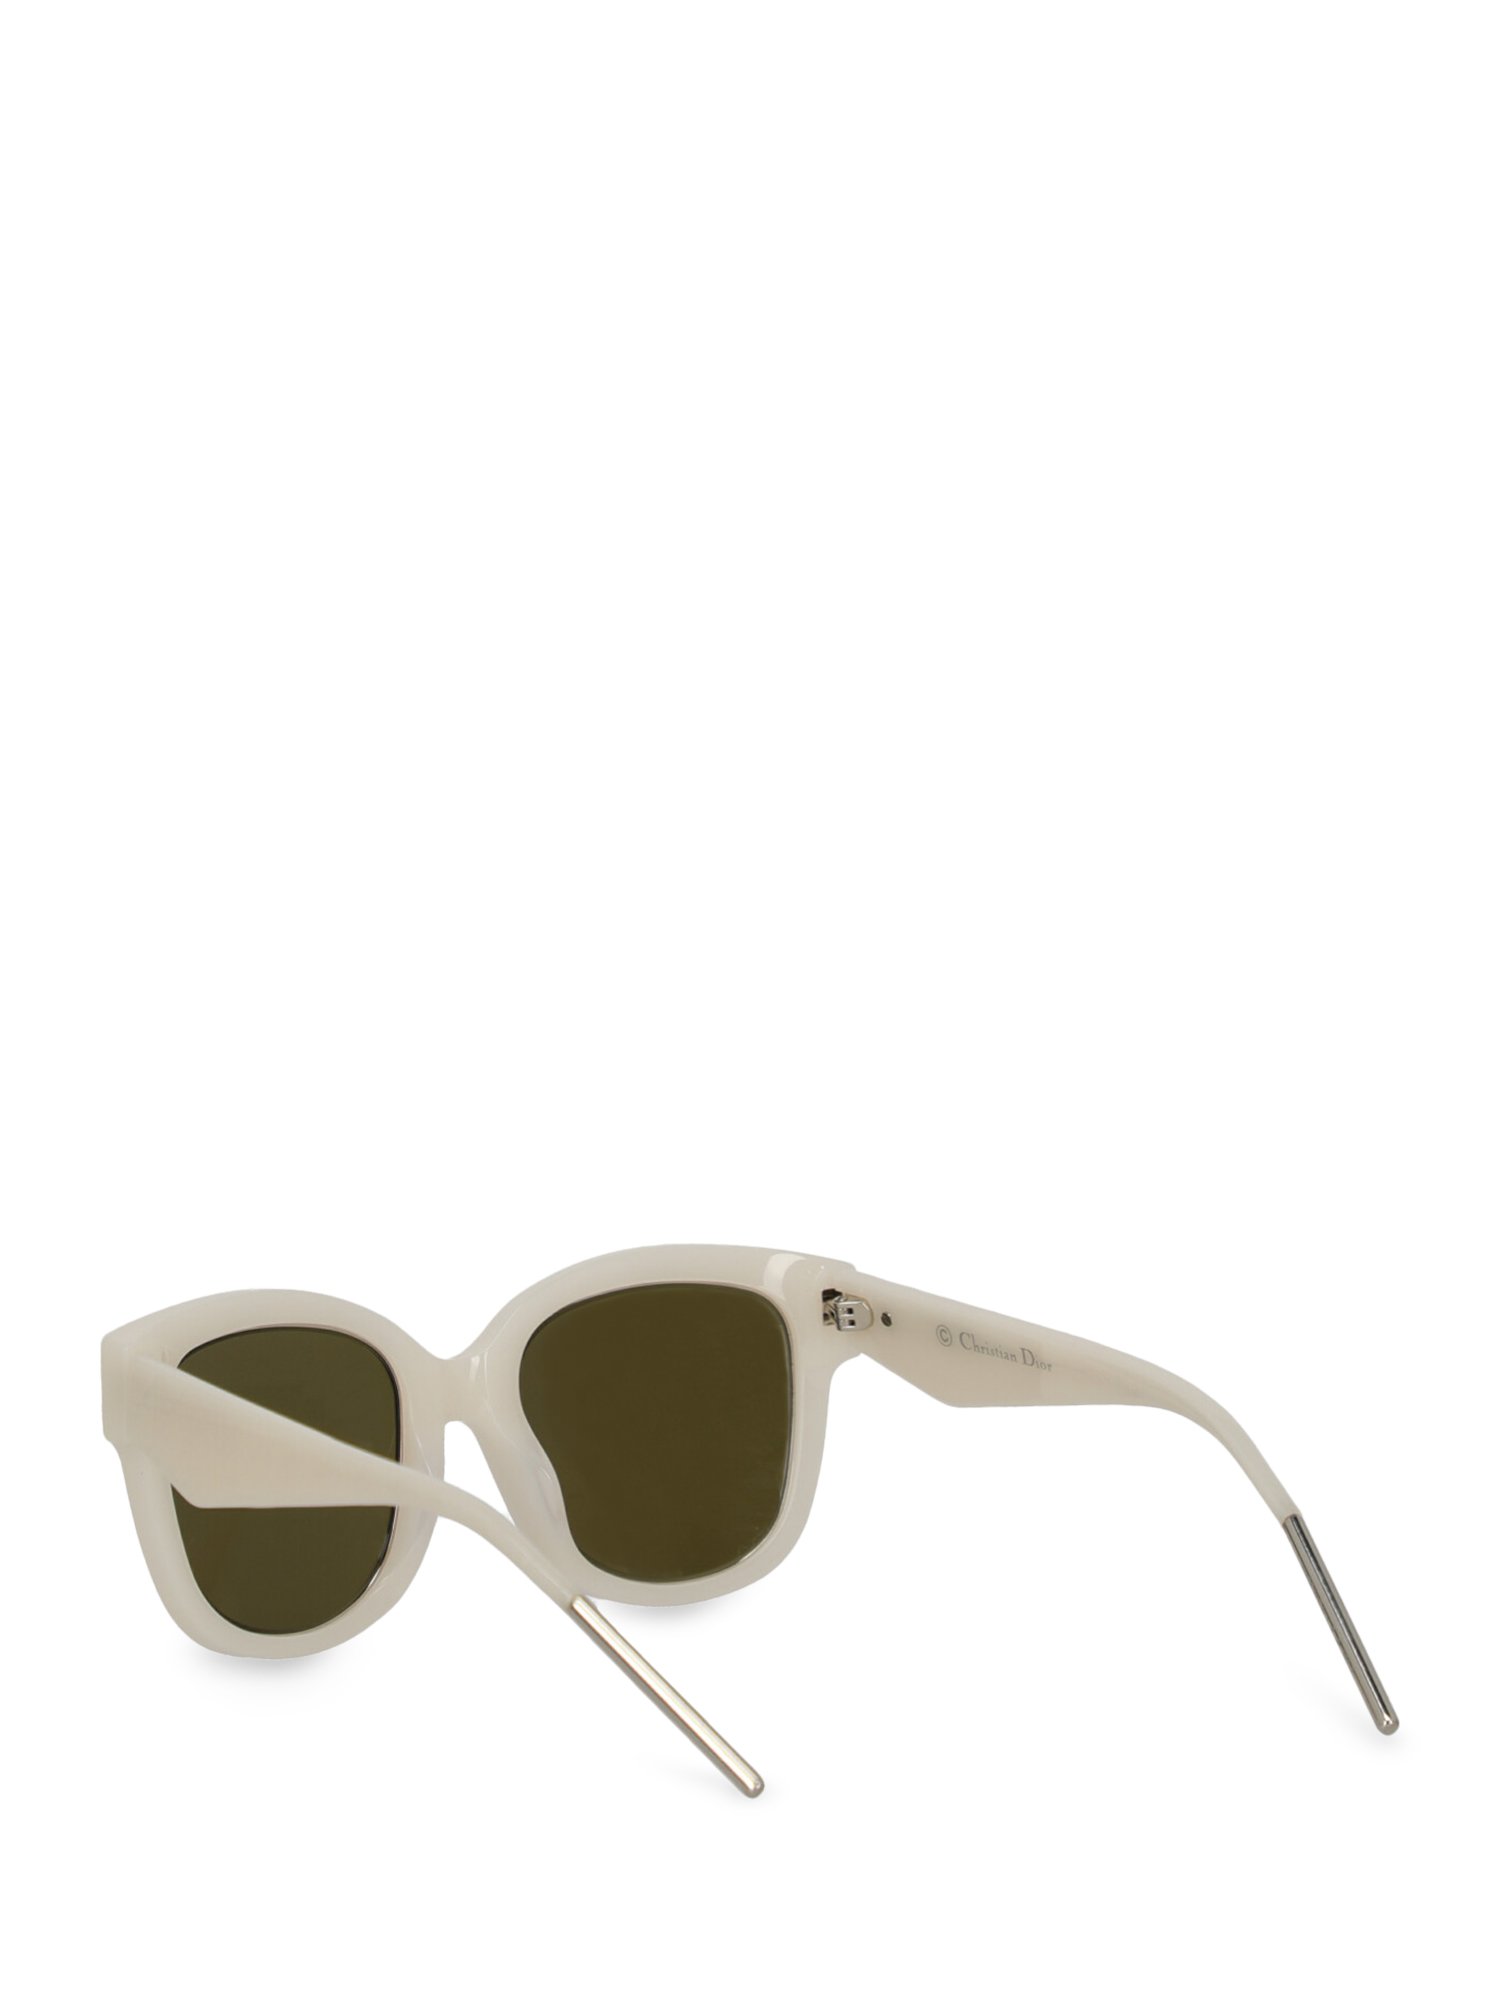 Dior Special Price Women Sunglasses White | eBay